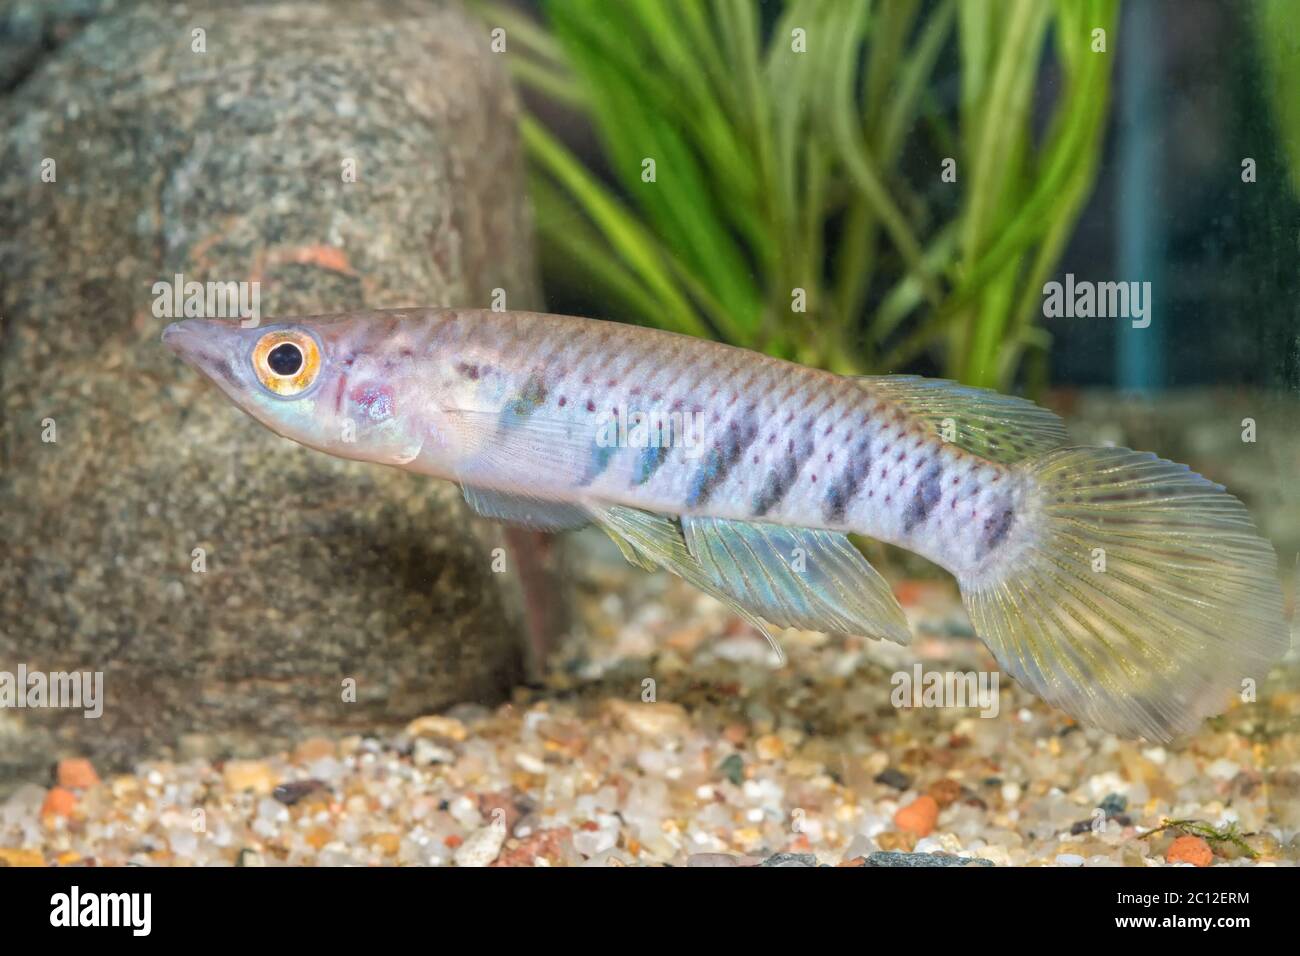 Portrait of fish (Epiplatys spilargyreius) in aquarium Stock Photo